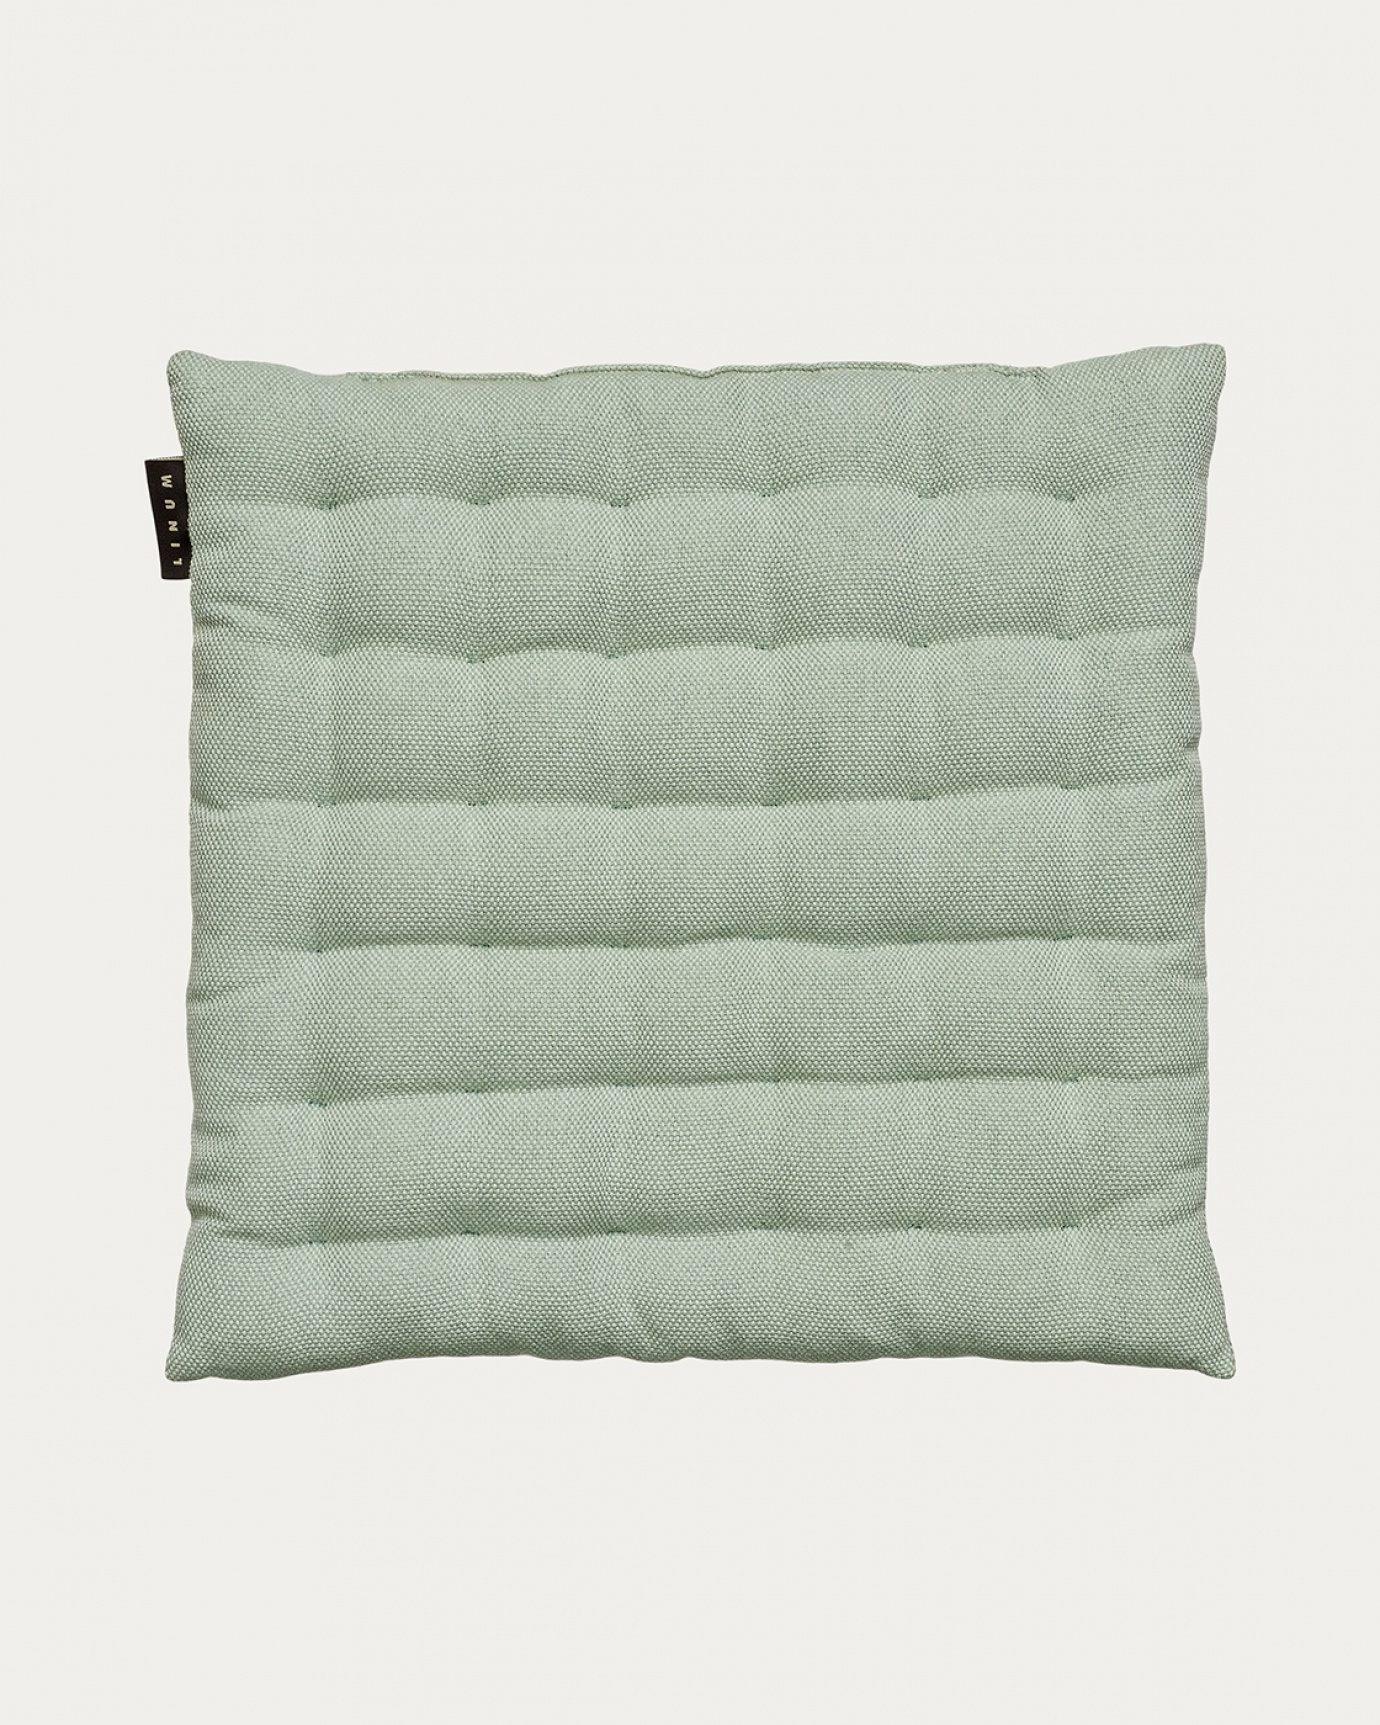 Immagine prodotto verde ghiaccio chiaro PEPPER cuscini sedie di cotone con imbottitura in poliestere di LINUM DESIGN. Dimensioni 40x40 cm.